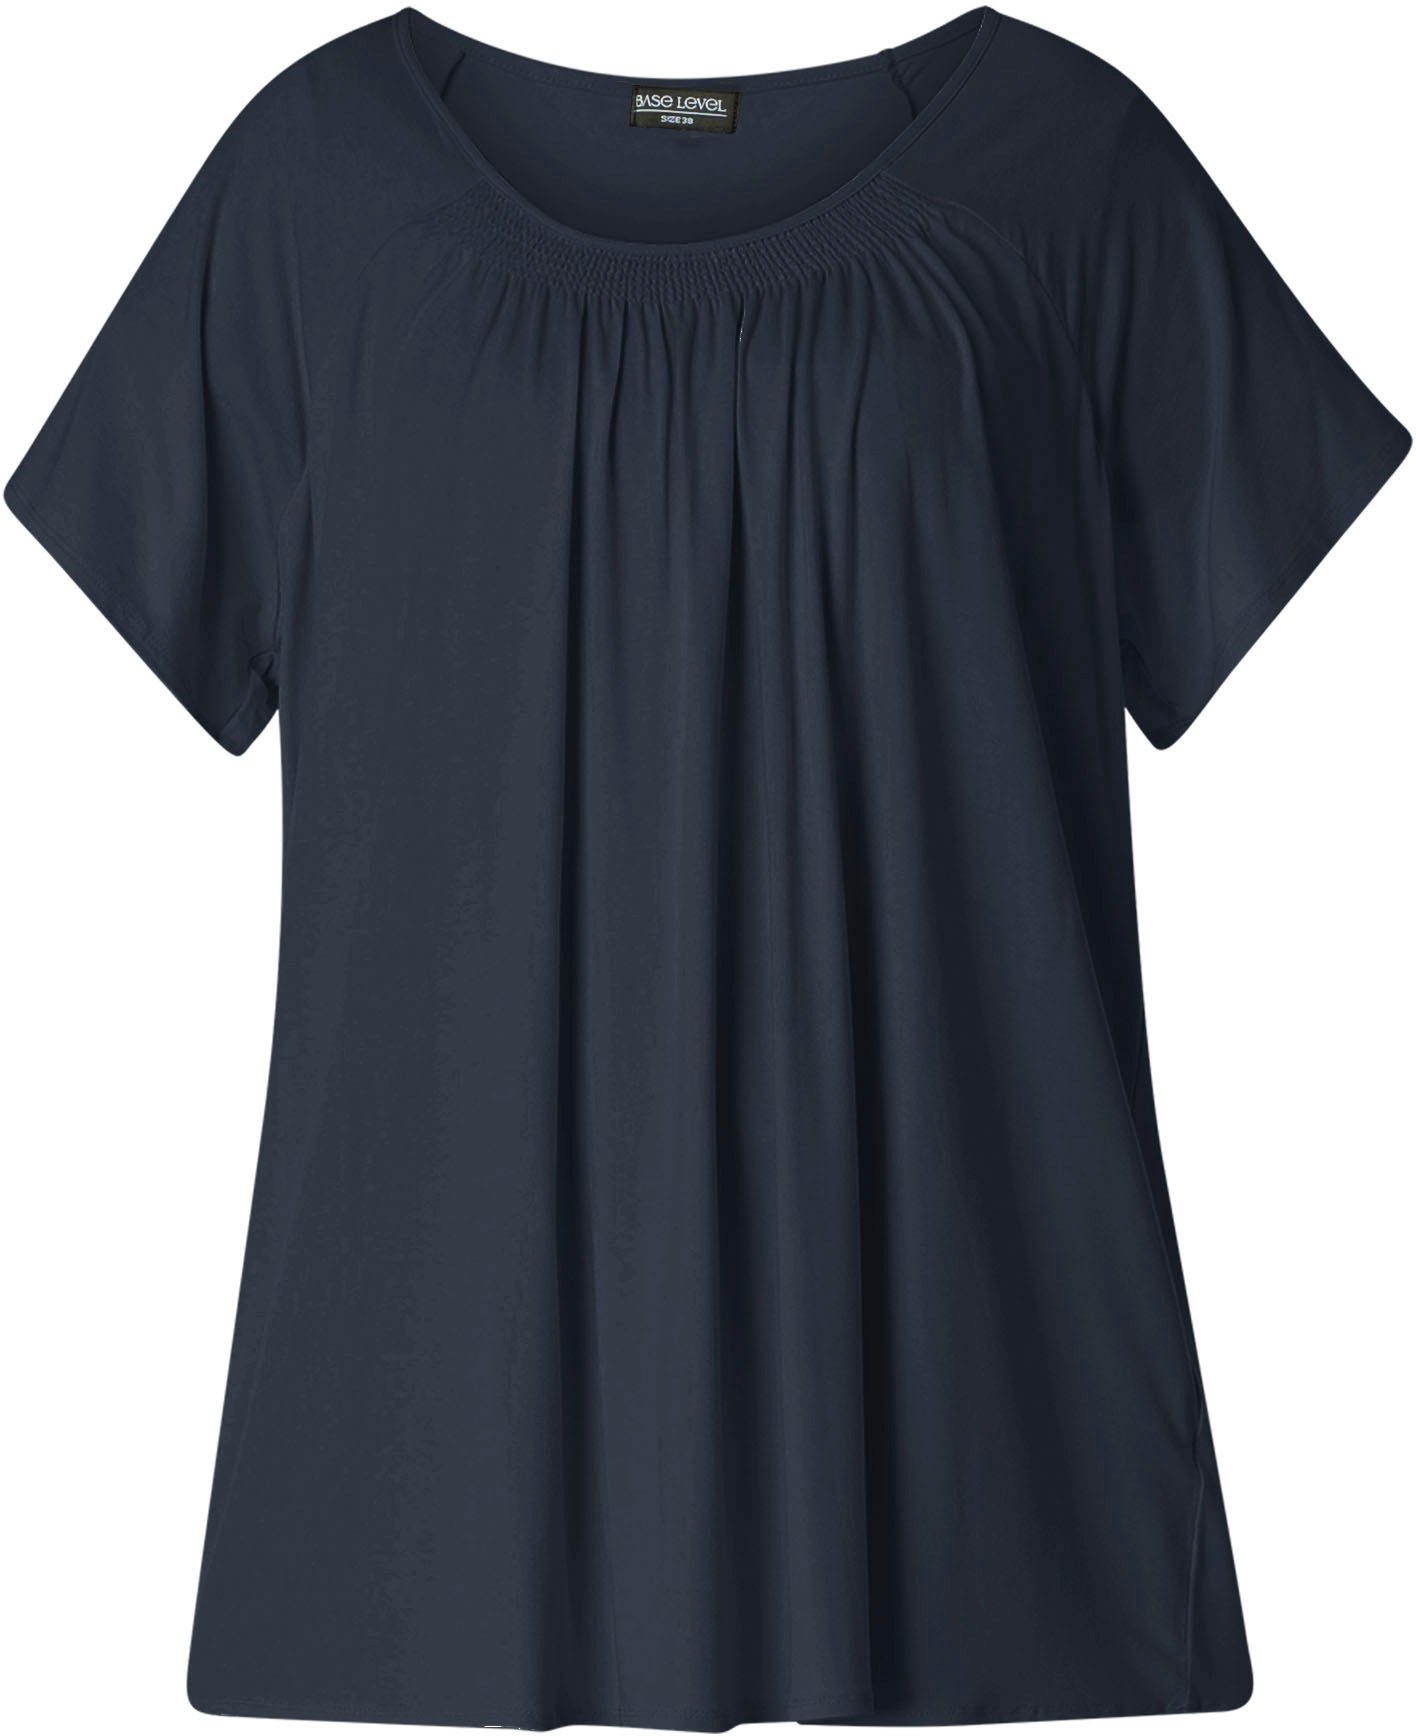 Base Level Curvy T-Shirt Yokia formstabiler In navy blue Baumwoll-Mischqualität dark